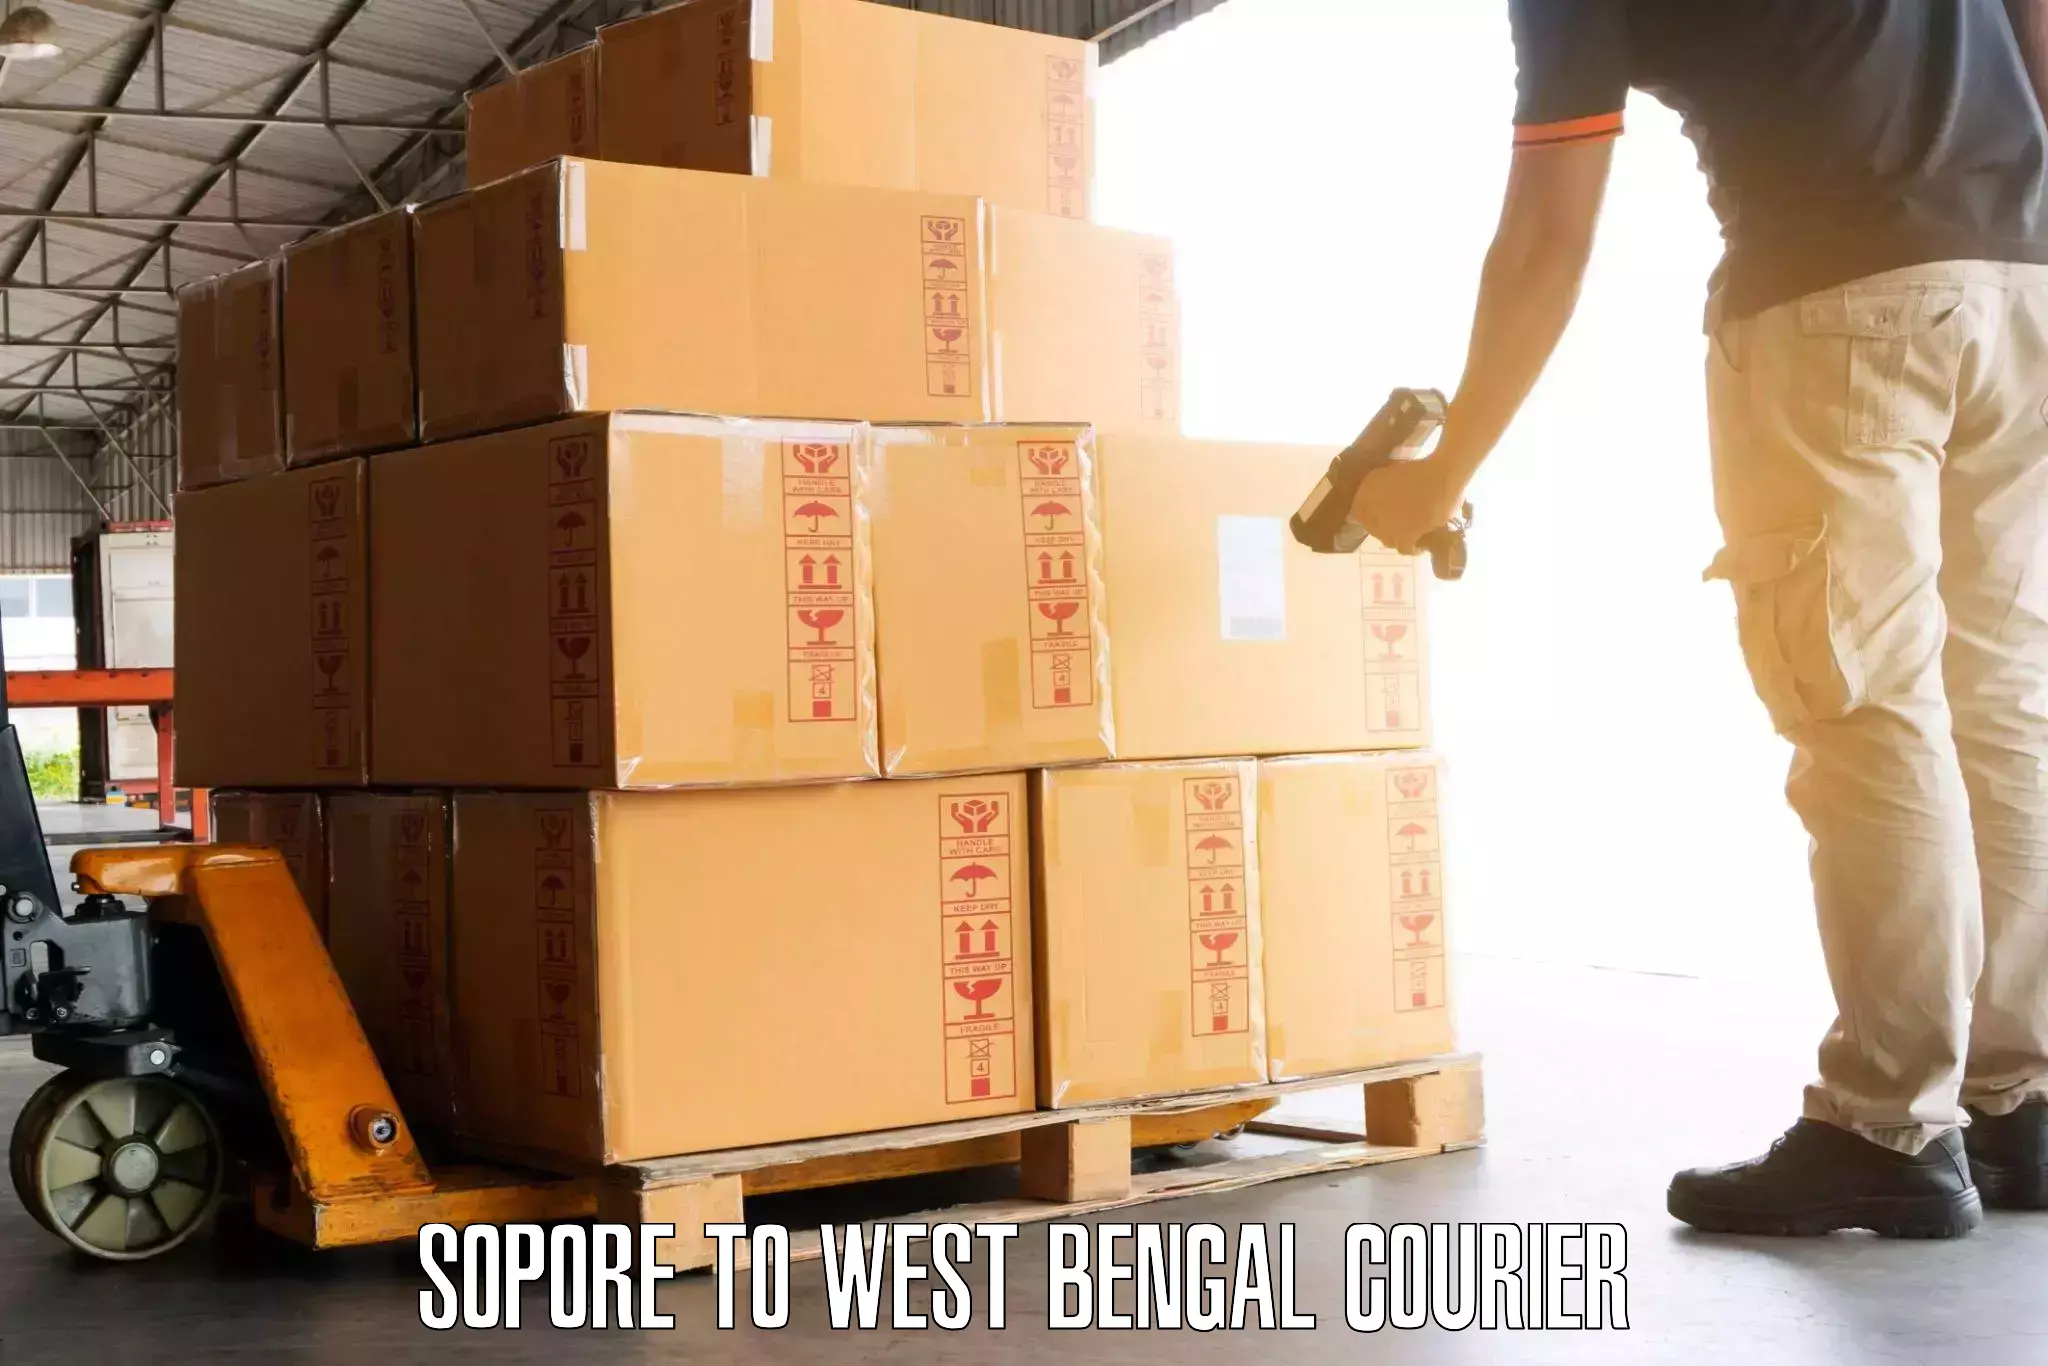 Luggage delivery estimate Sopore to Manteswar